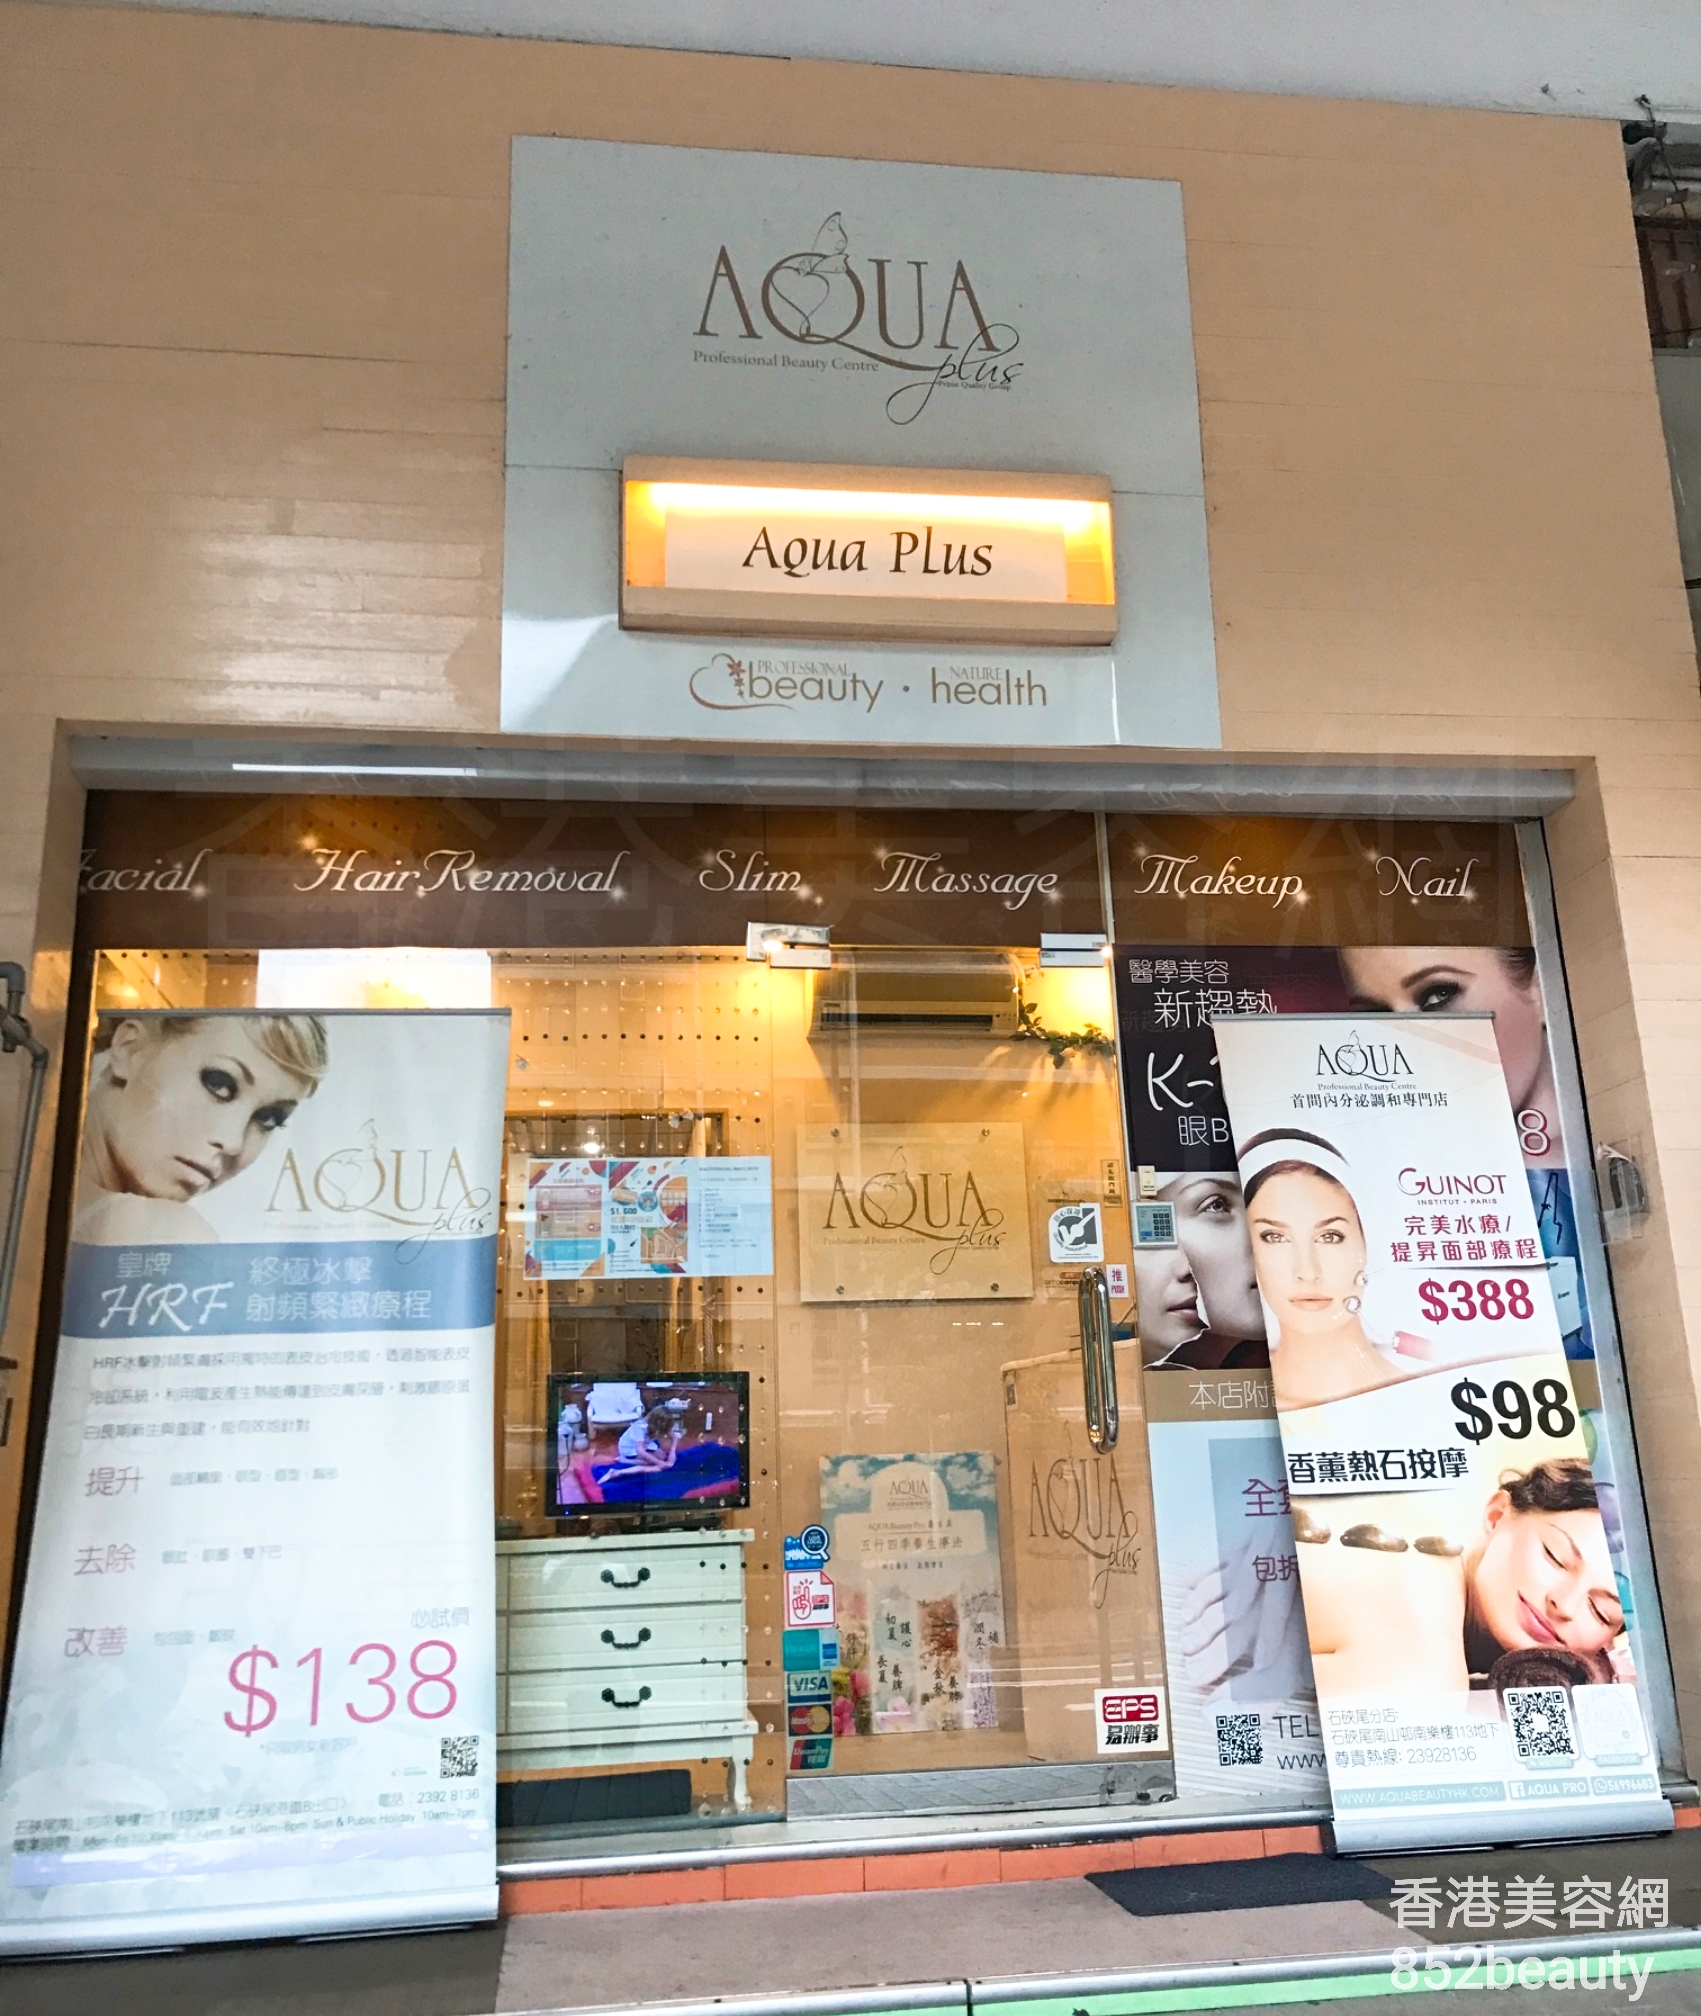 美甲: AQUA Professional Beauty Centre (石硤尾分店)